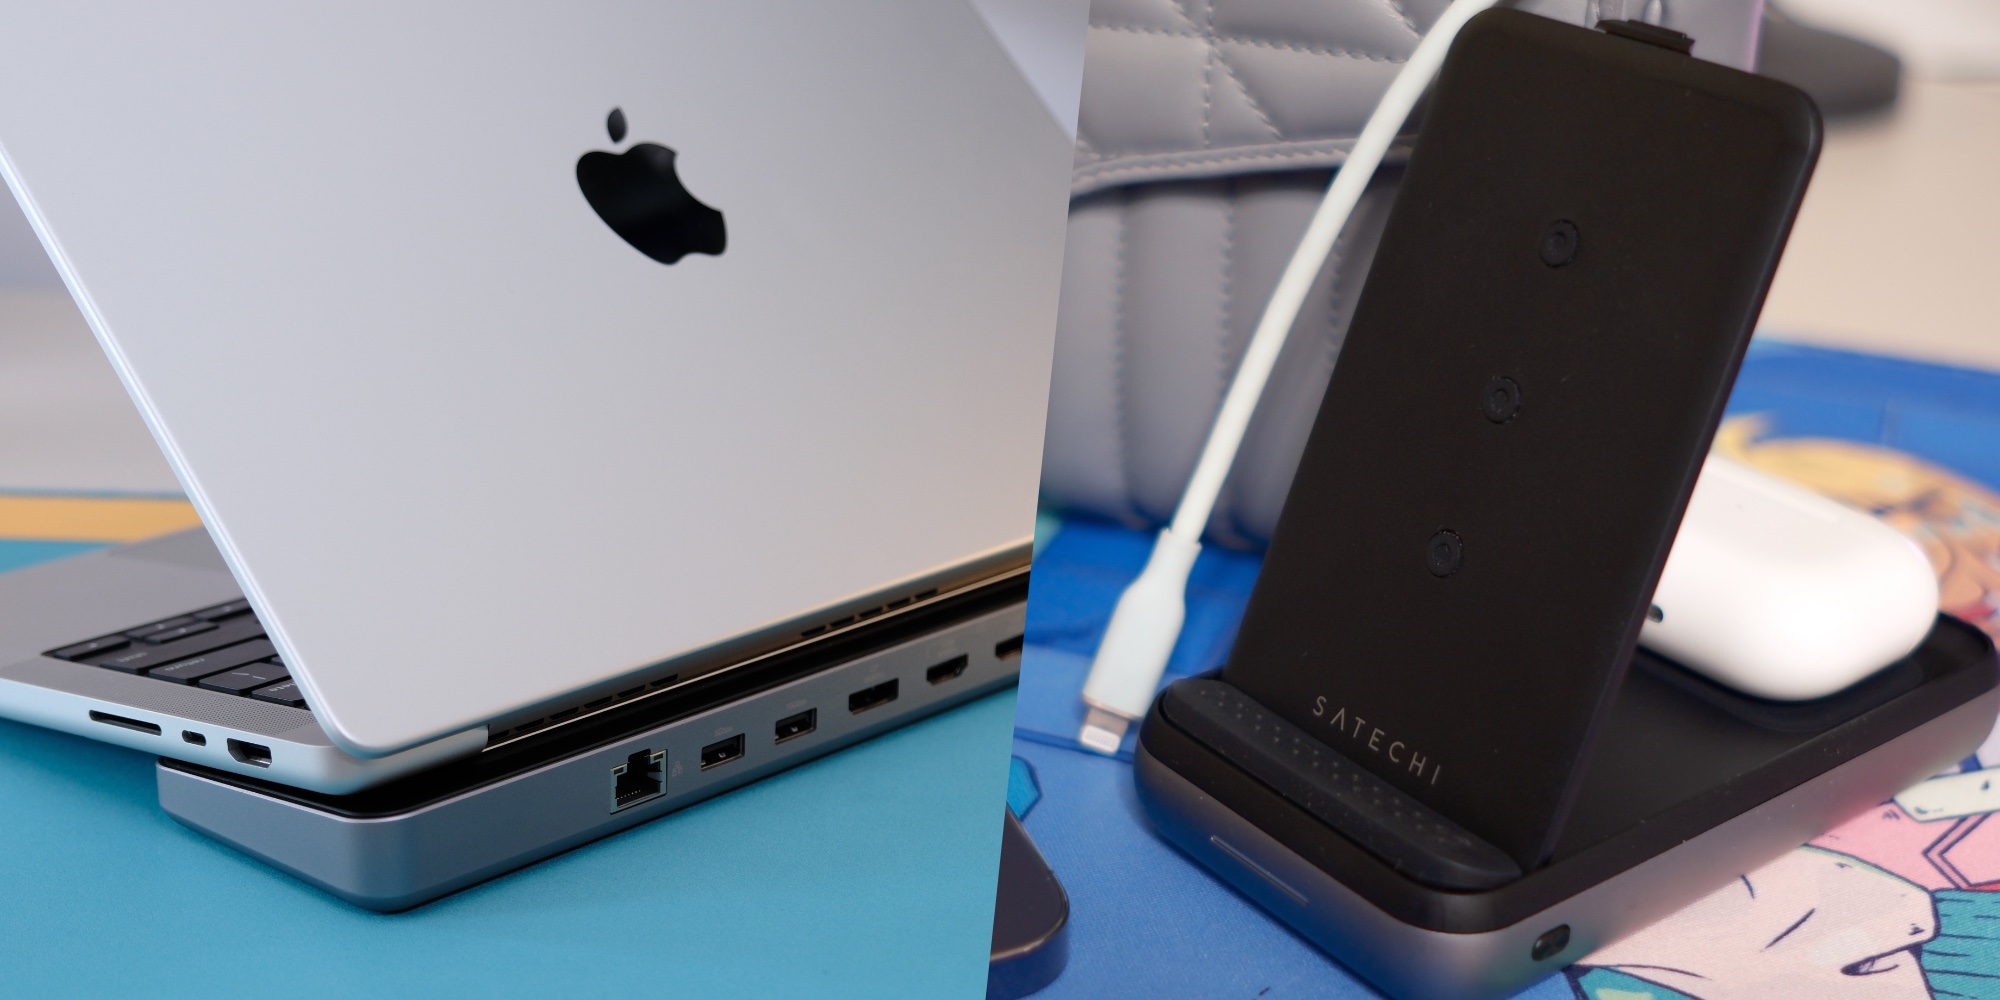 Satechi 4-Port USB-C Hub review: Add USB-C ports to Mac or iPad